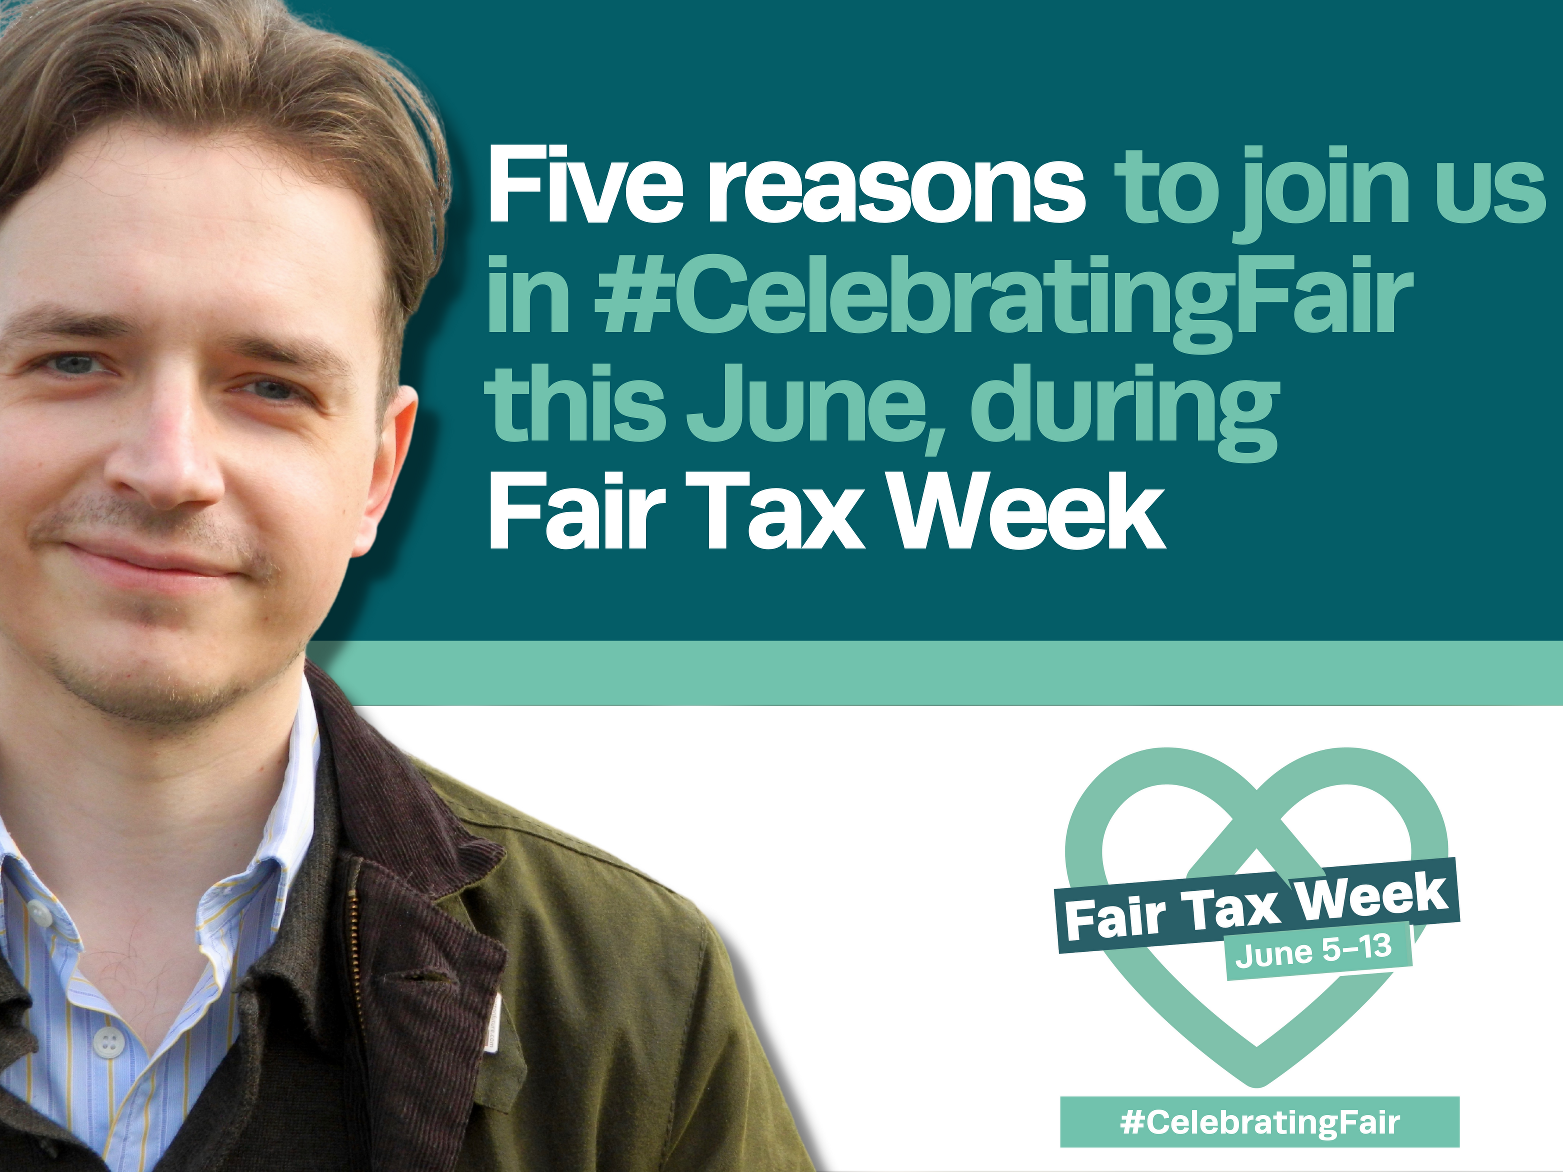 Fair Tax Week